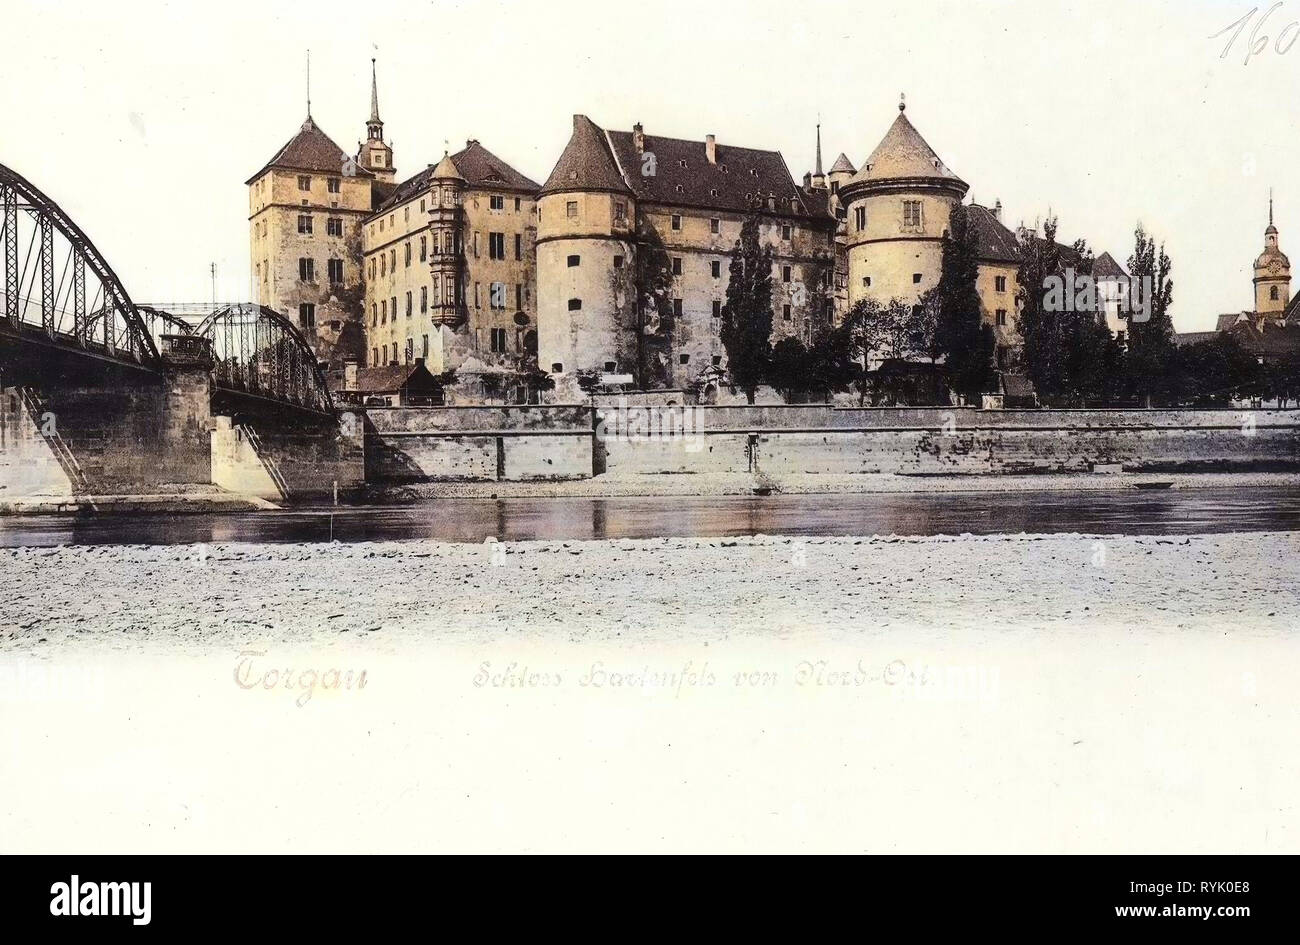 Schloss Hartenfels, Torgau, Bridges in Torgau, Elbe in Torgau, 1901, Landkreis Nordsachsen, Schloß Hartenfels von Nord, Ost, Germany Stock Photo